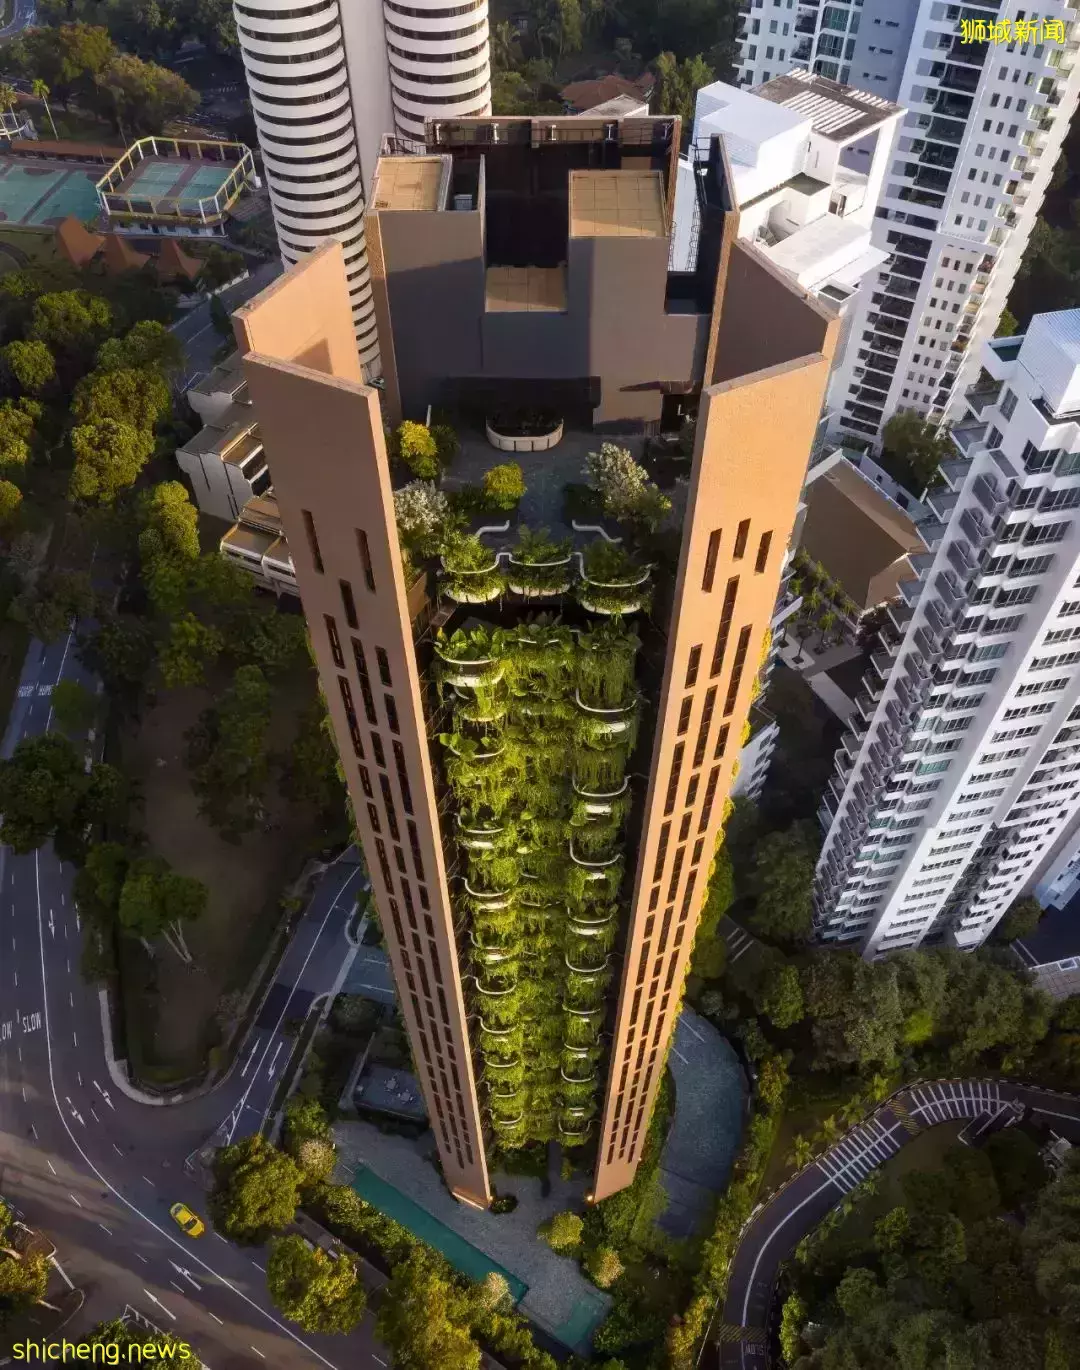 垂直綠化立面——新加坡豪華公寓